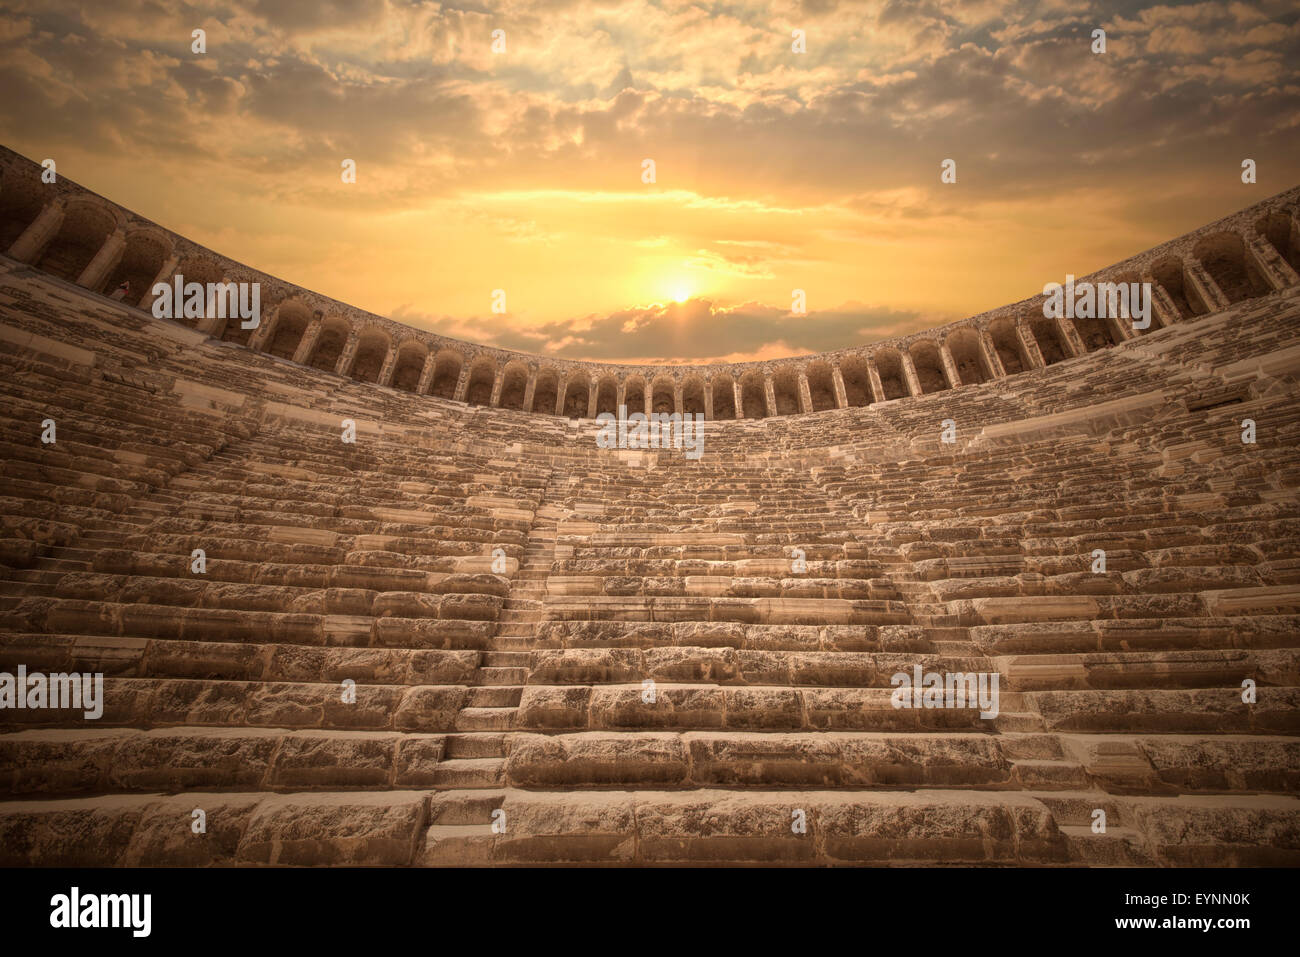 aspendos amphitheater Antalya, Turkey Stock Photo